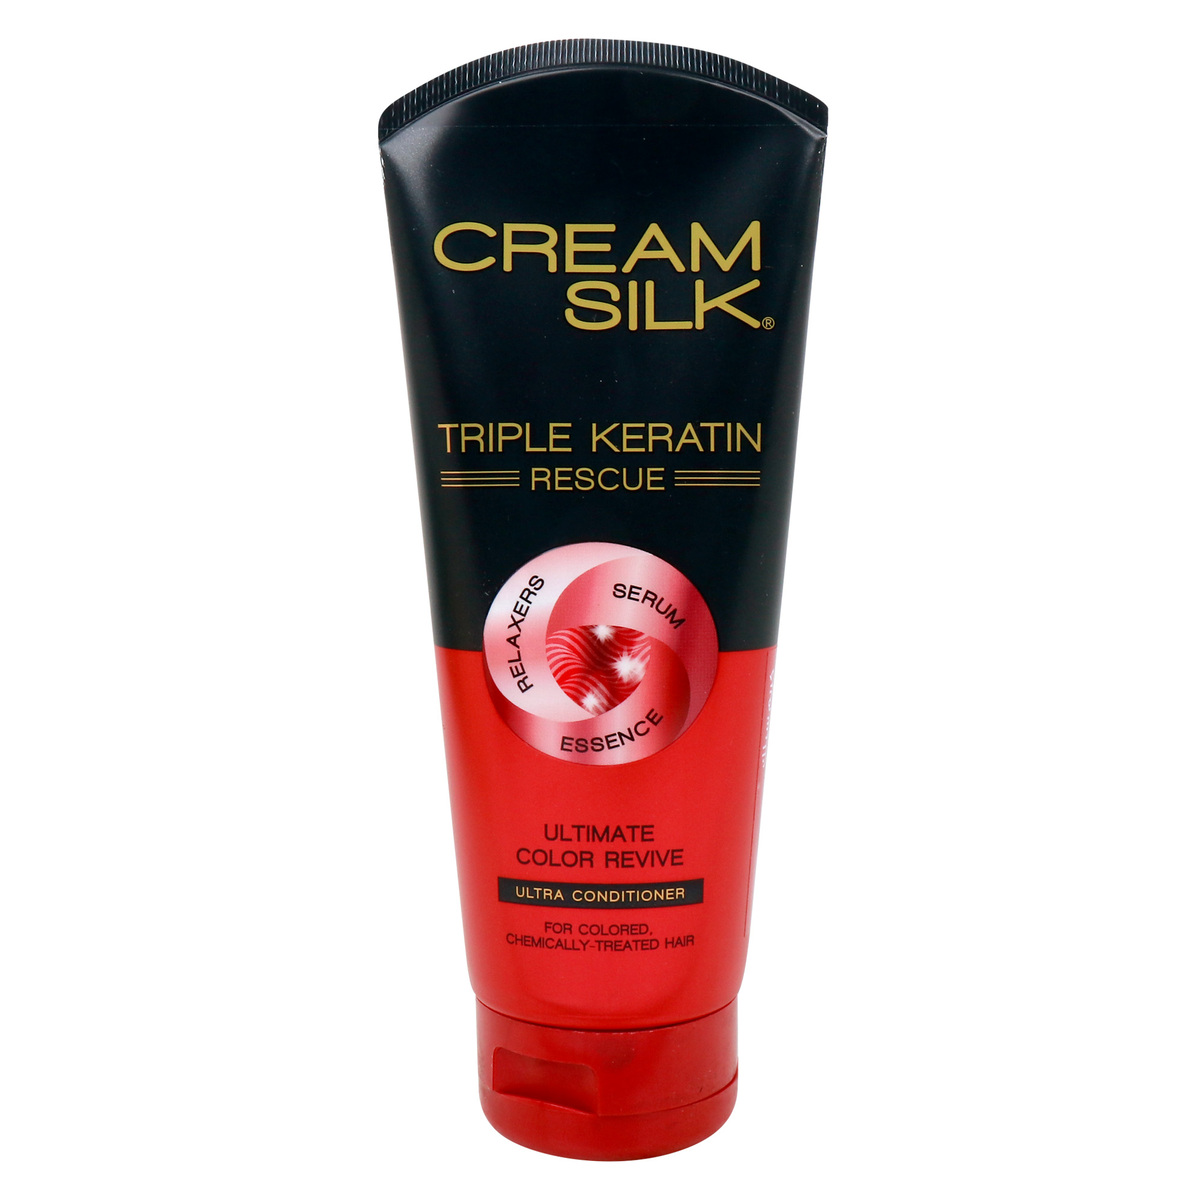 Cream Silk Triple Keratin Rescue Ultimate Color Revive Ultra Conditioner 150 ml